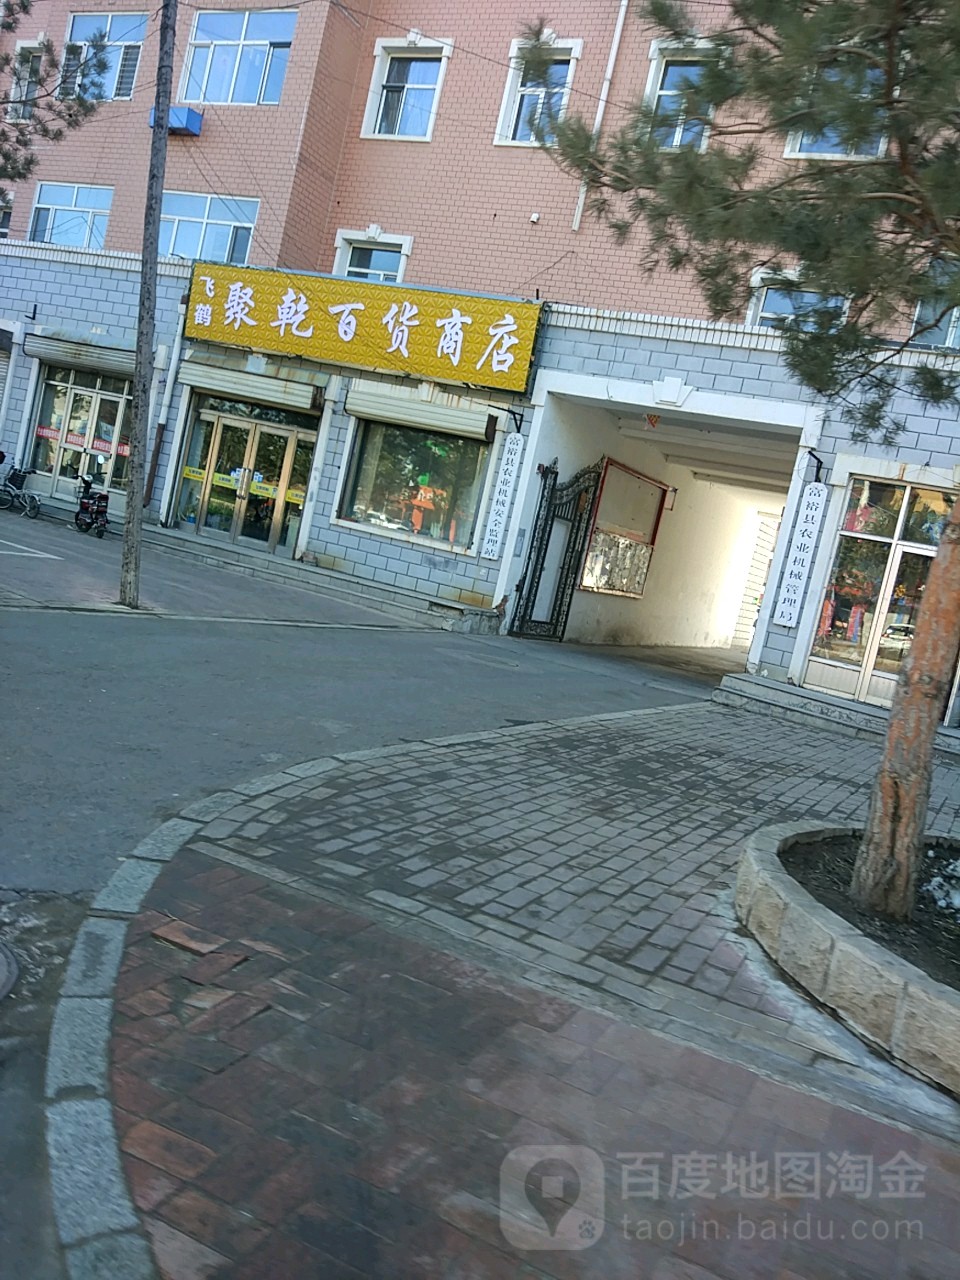 飞鹤青苗乳制品商店